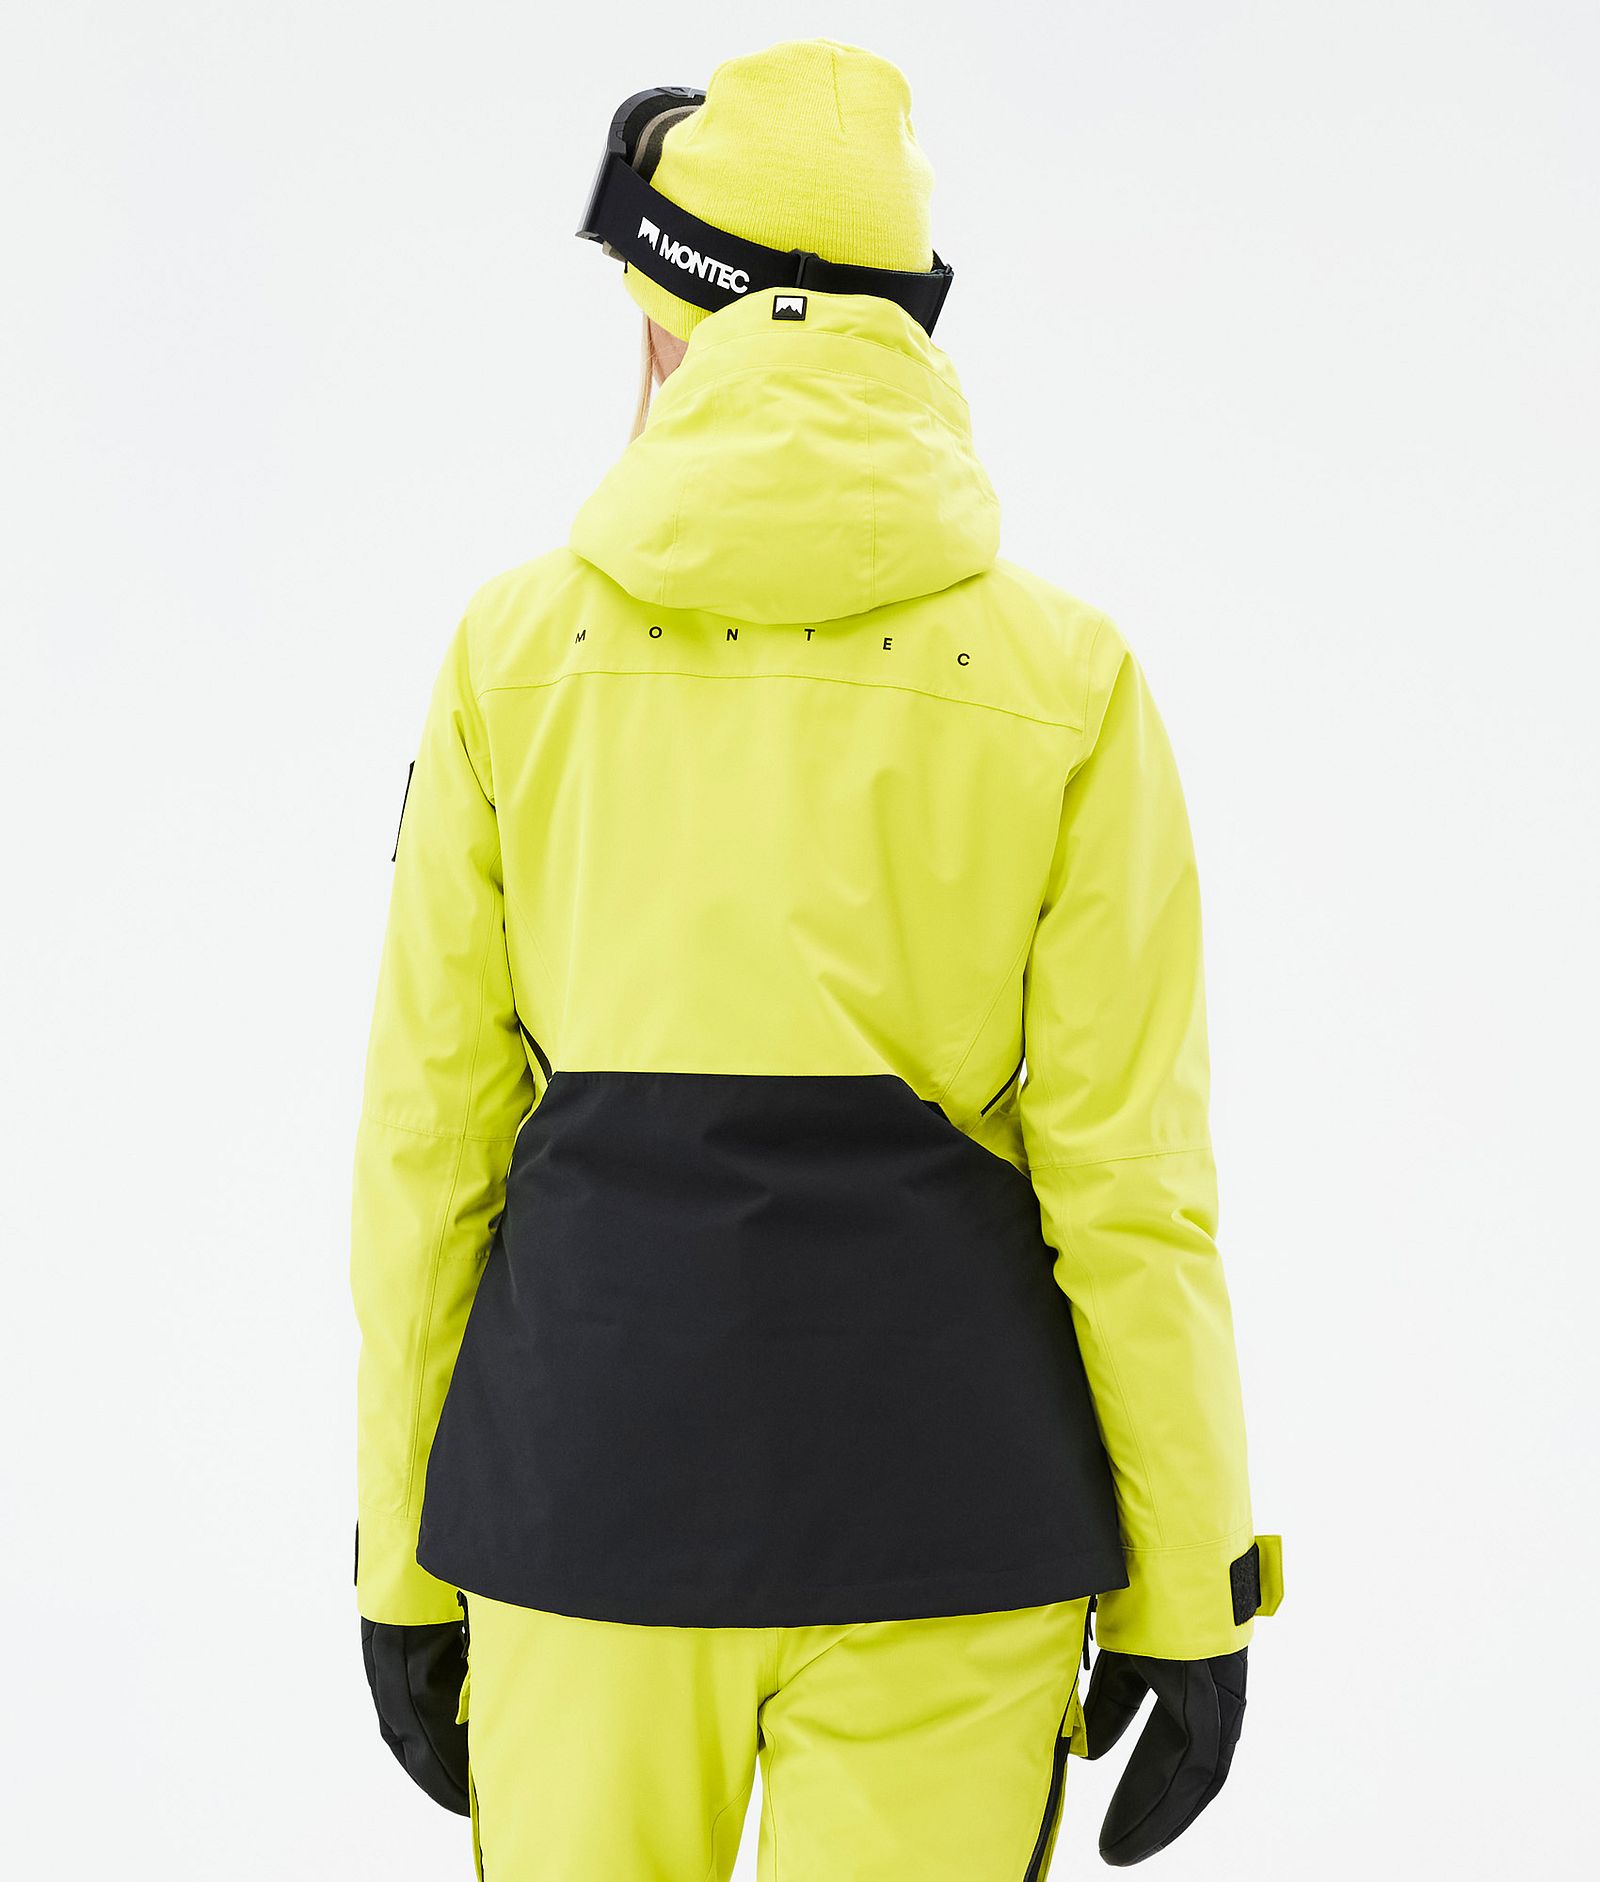 Moss W Ski Jacket Women Bright Yellow/Black, Image 7 of 10